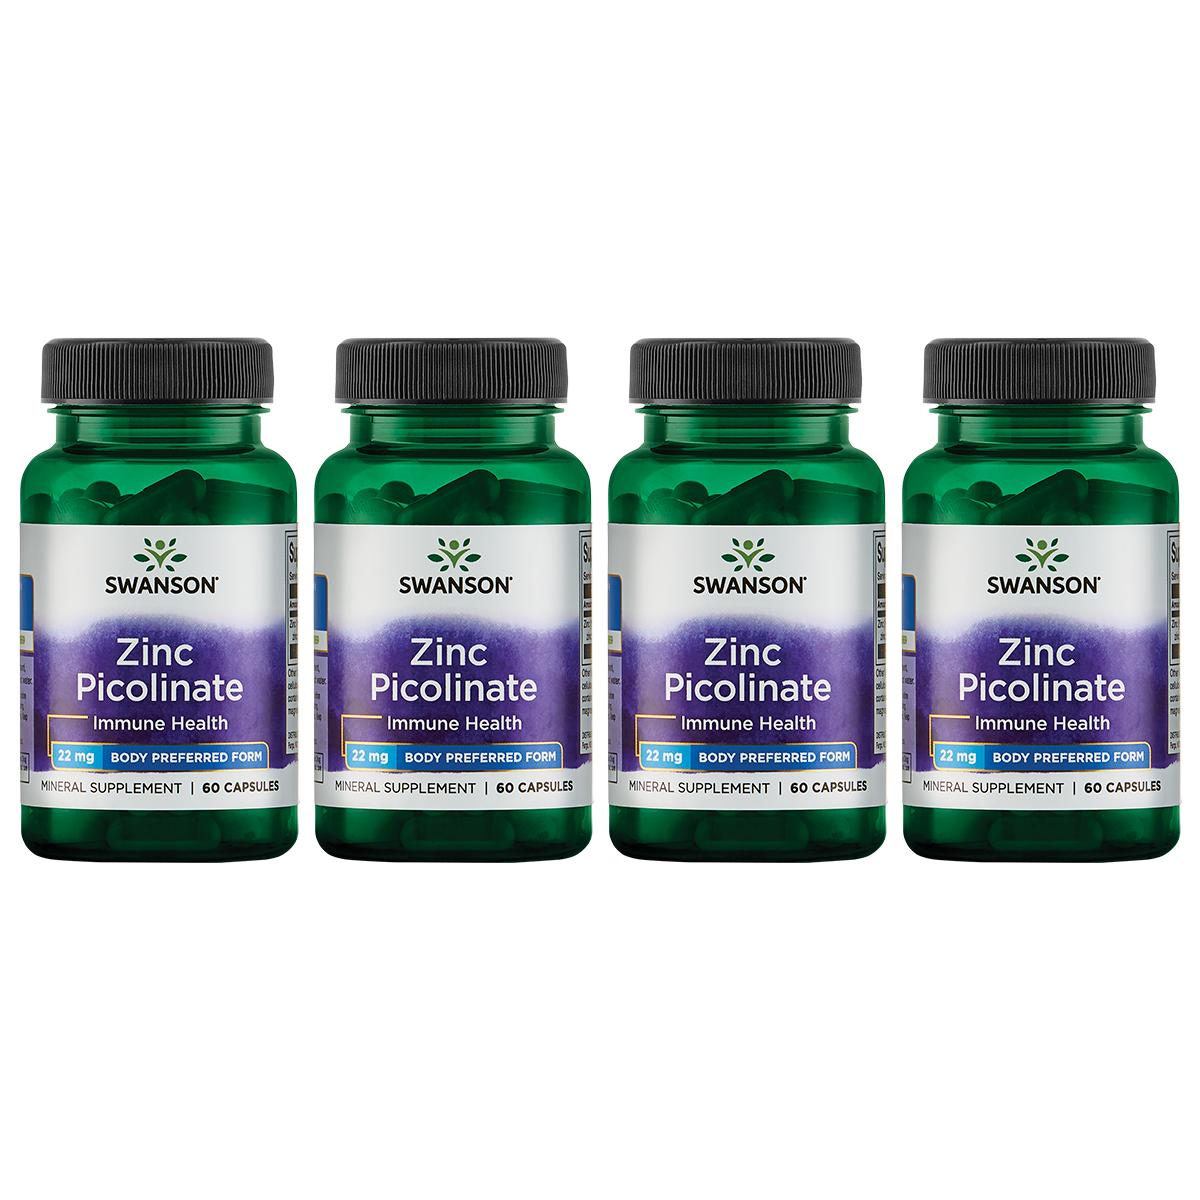 Swanson Premium Zinc Picolinate - Body Preferred Form 4 Pack Vitamin 22 mg 60 Caps Prostate Health